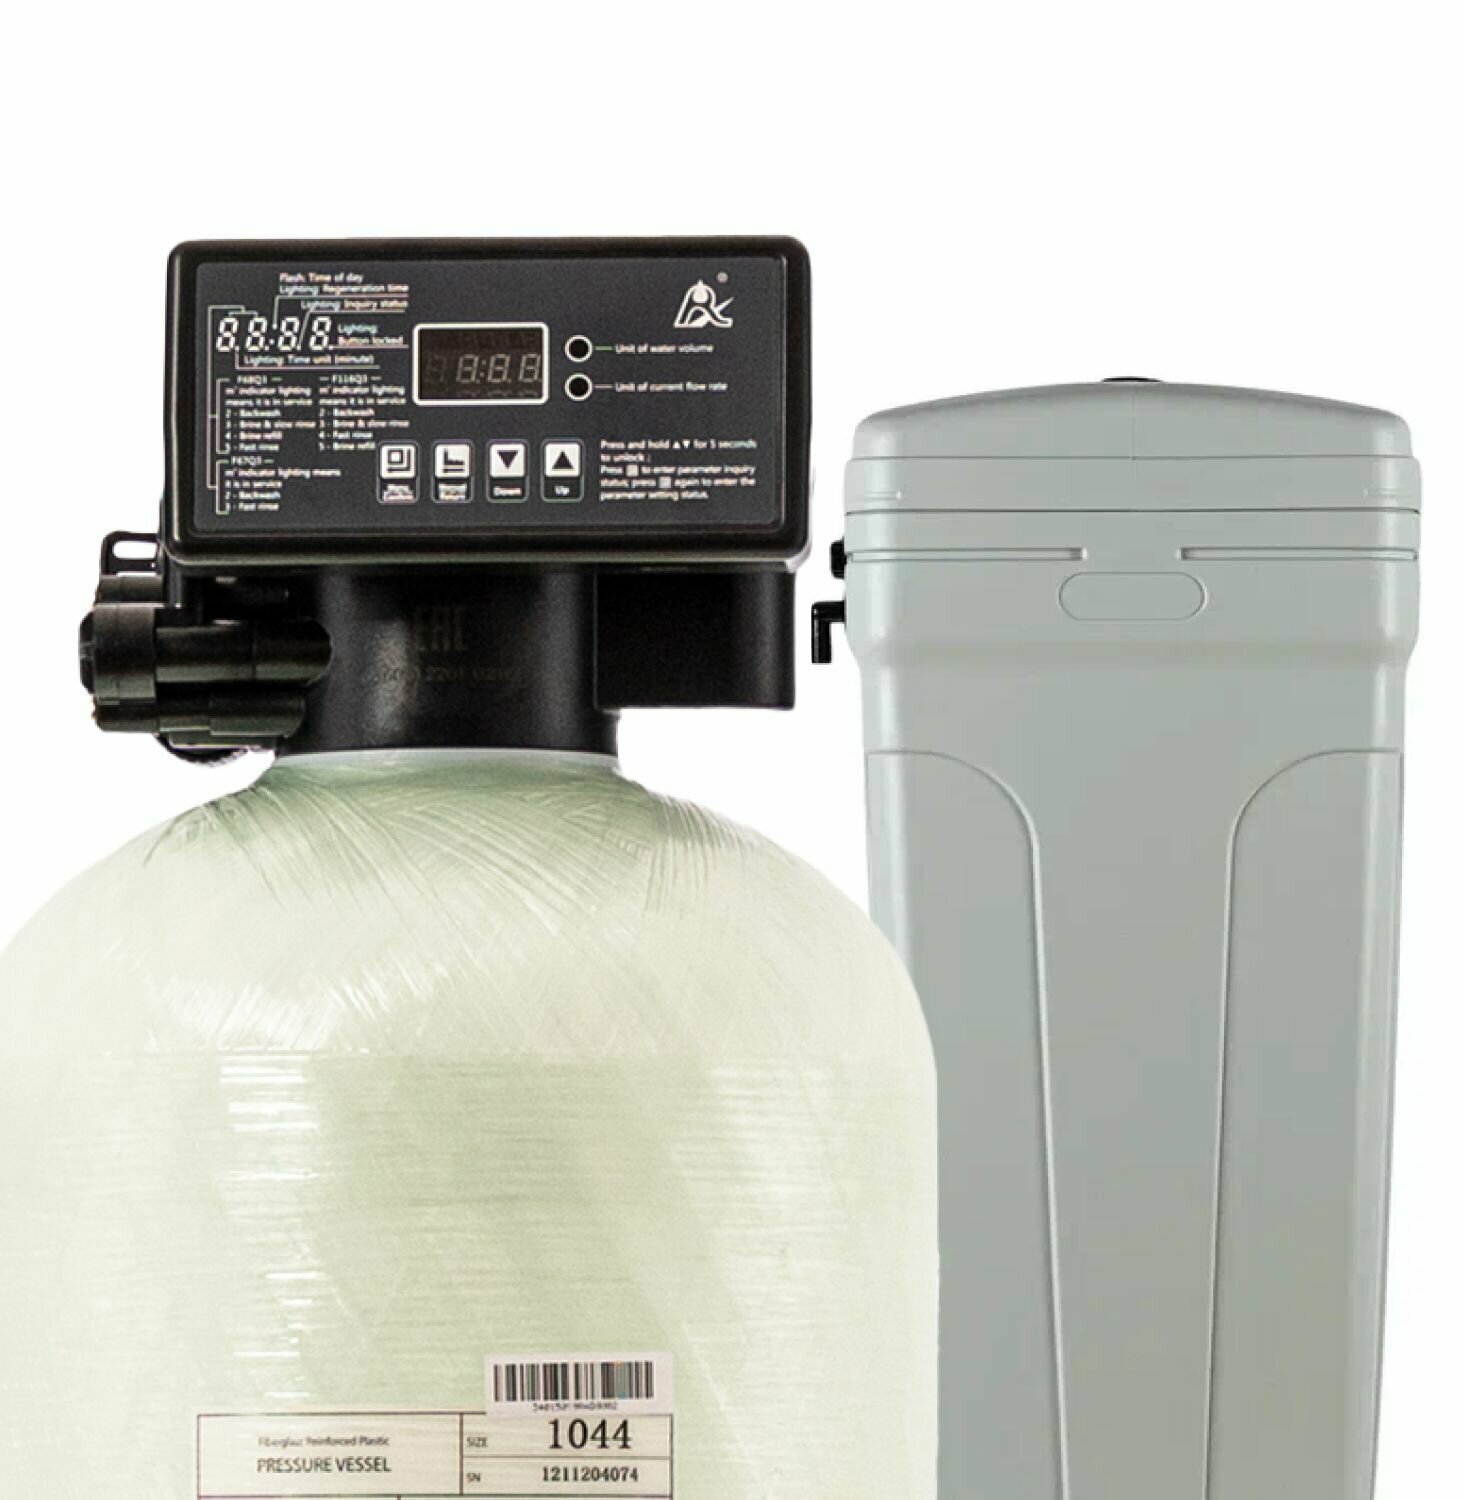 Автоматический фильтр умягчения полный комплект , обезжелезивания воды DS SOFT STANDART S. Потребители до 3 человек.